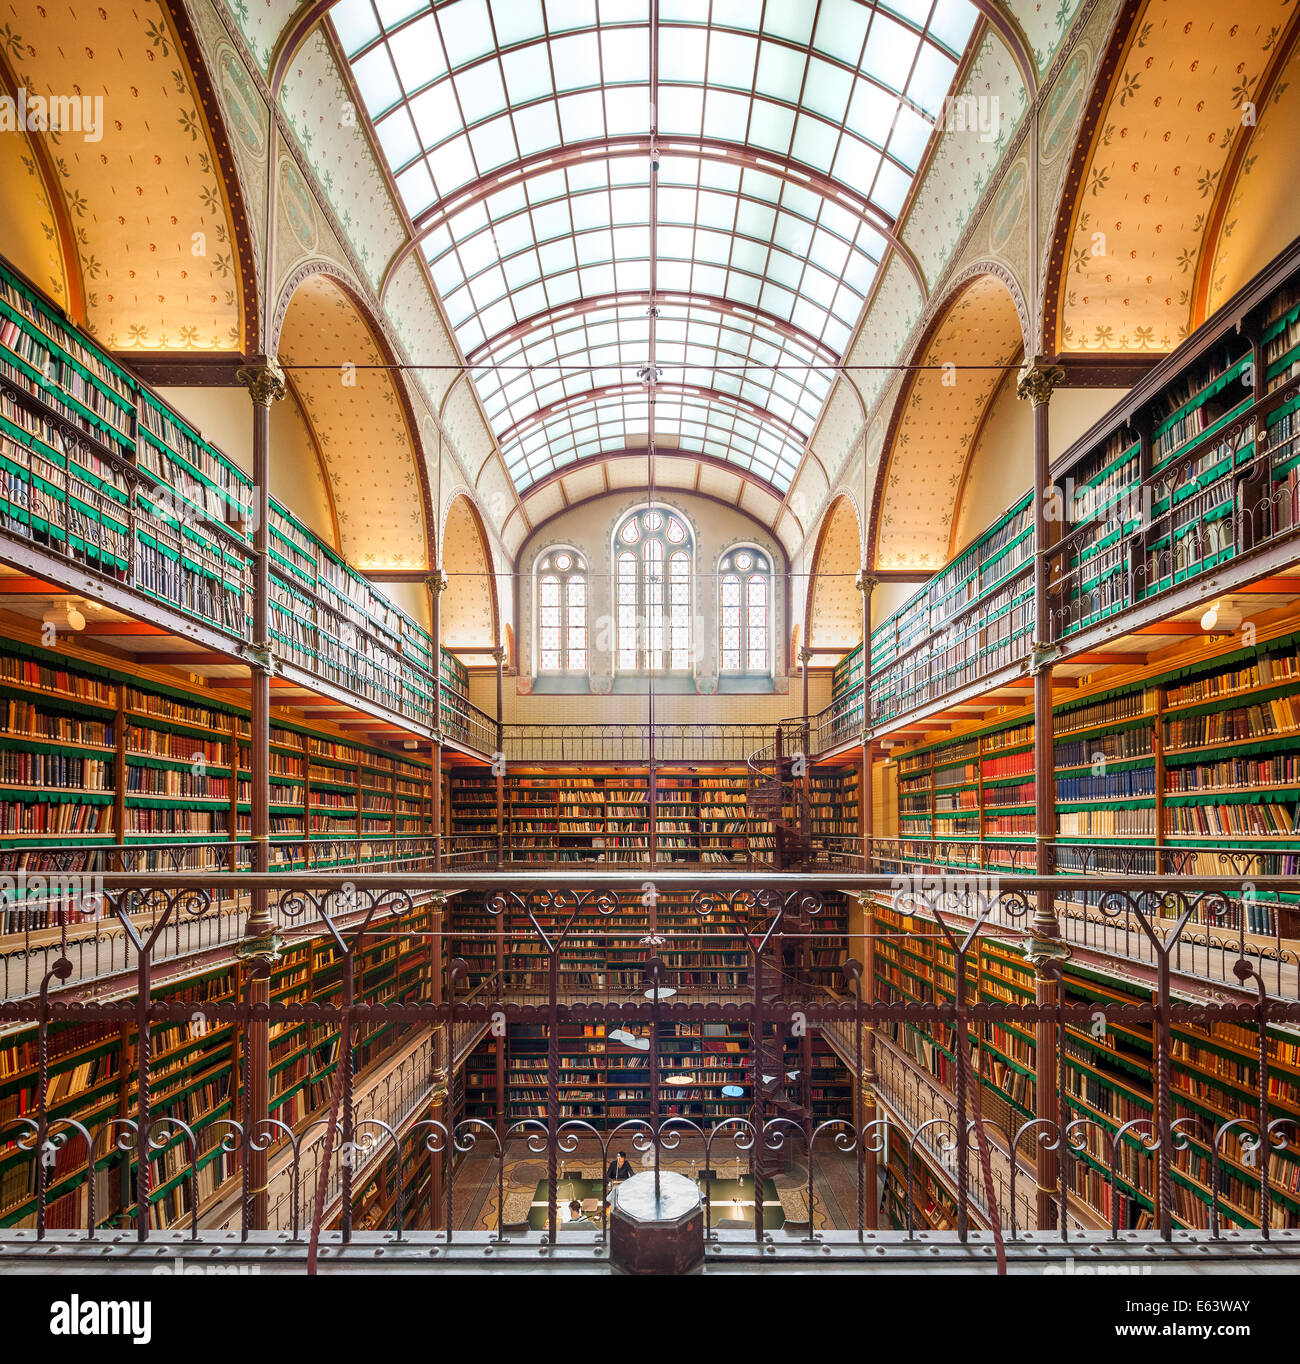 Rijksmuseum Amsterdam Bibliothek des Amsterdamer Rijksmuseum eine der schönsten berühmten Bibliotheken und Lesesäle in der Welt Stockfoto